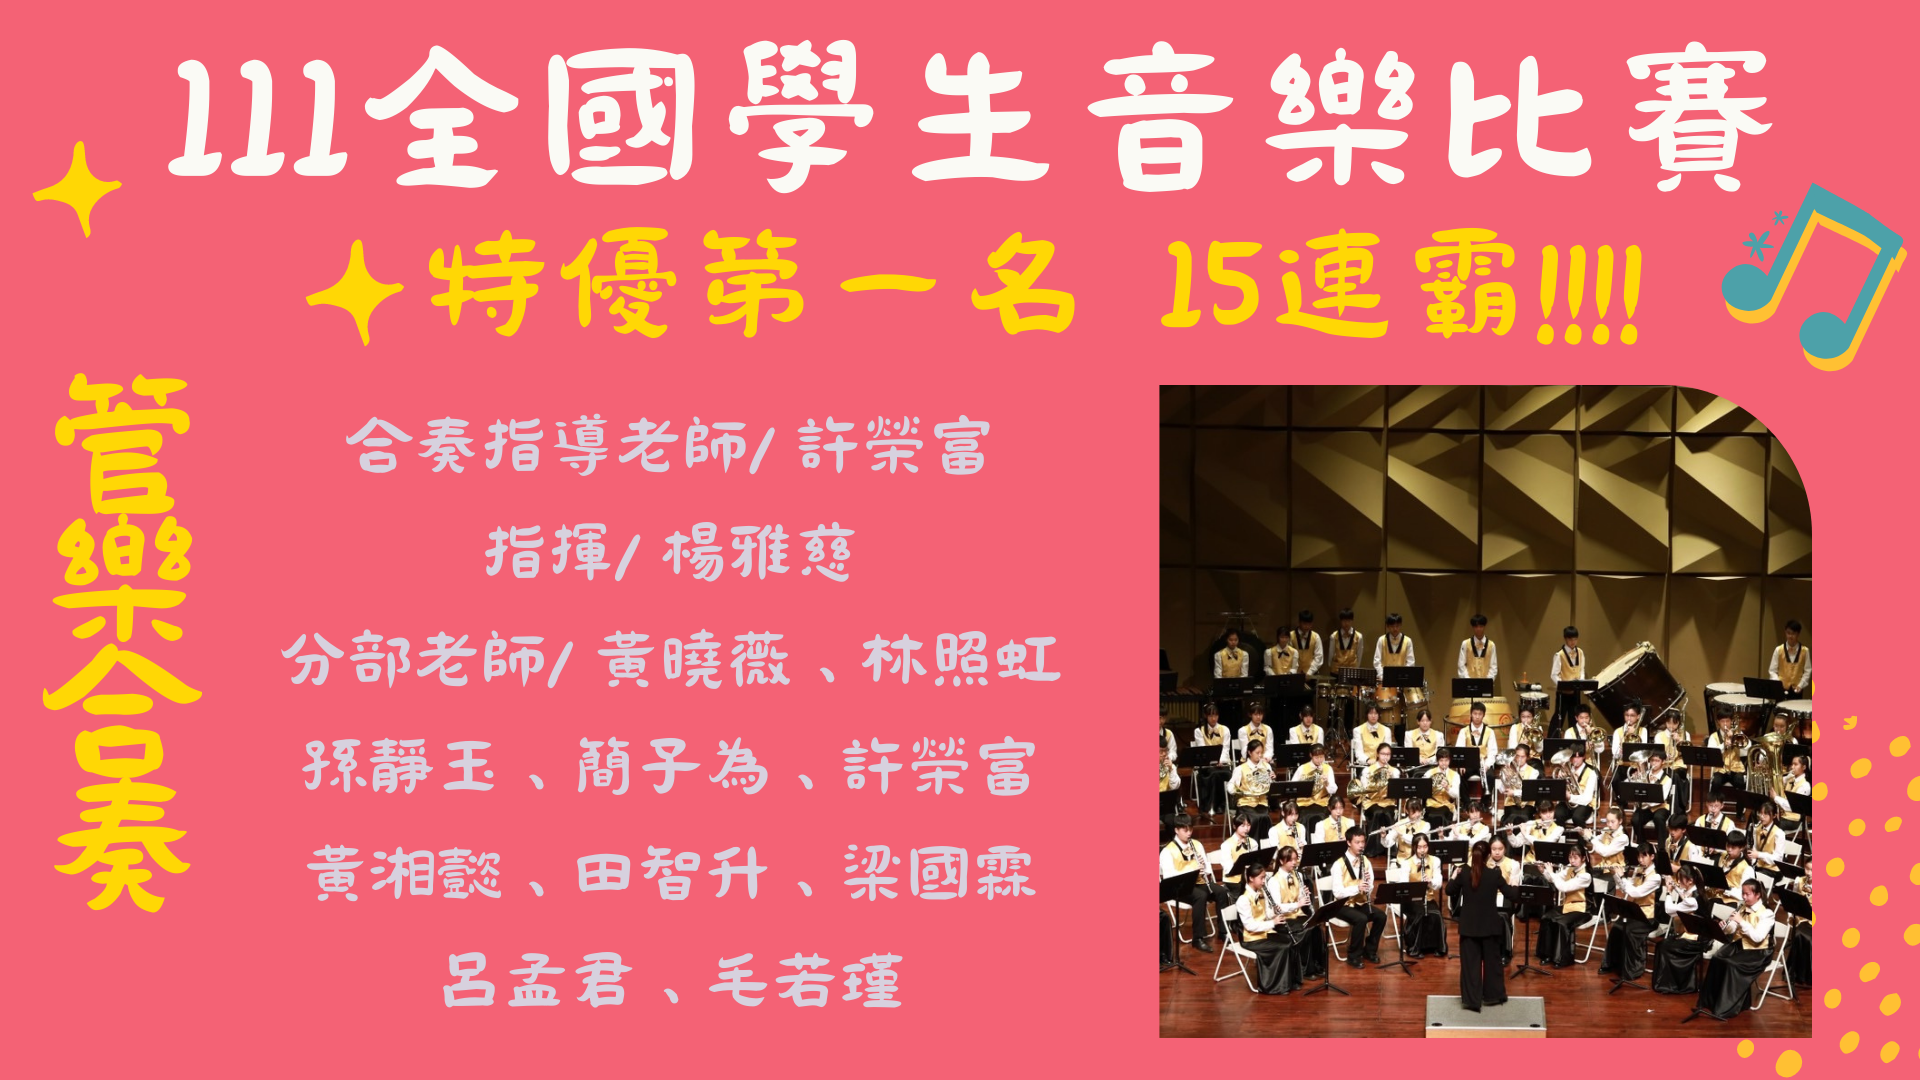 音樂班參加111學年度全國學生音樂比賽【管樂合奏】榮獲特優第一名，15連霸!!